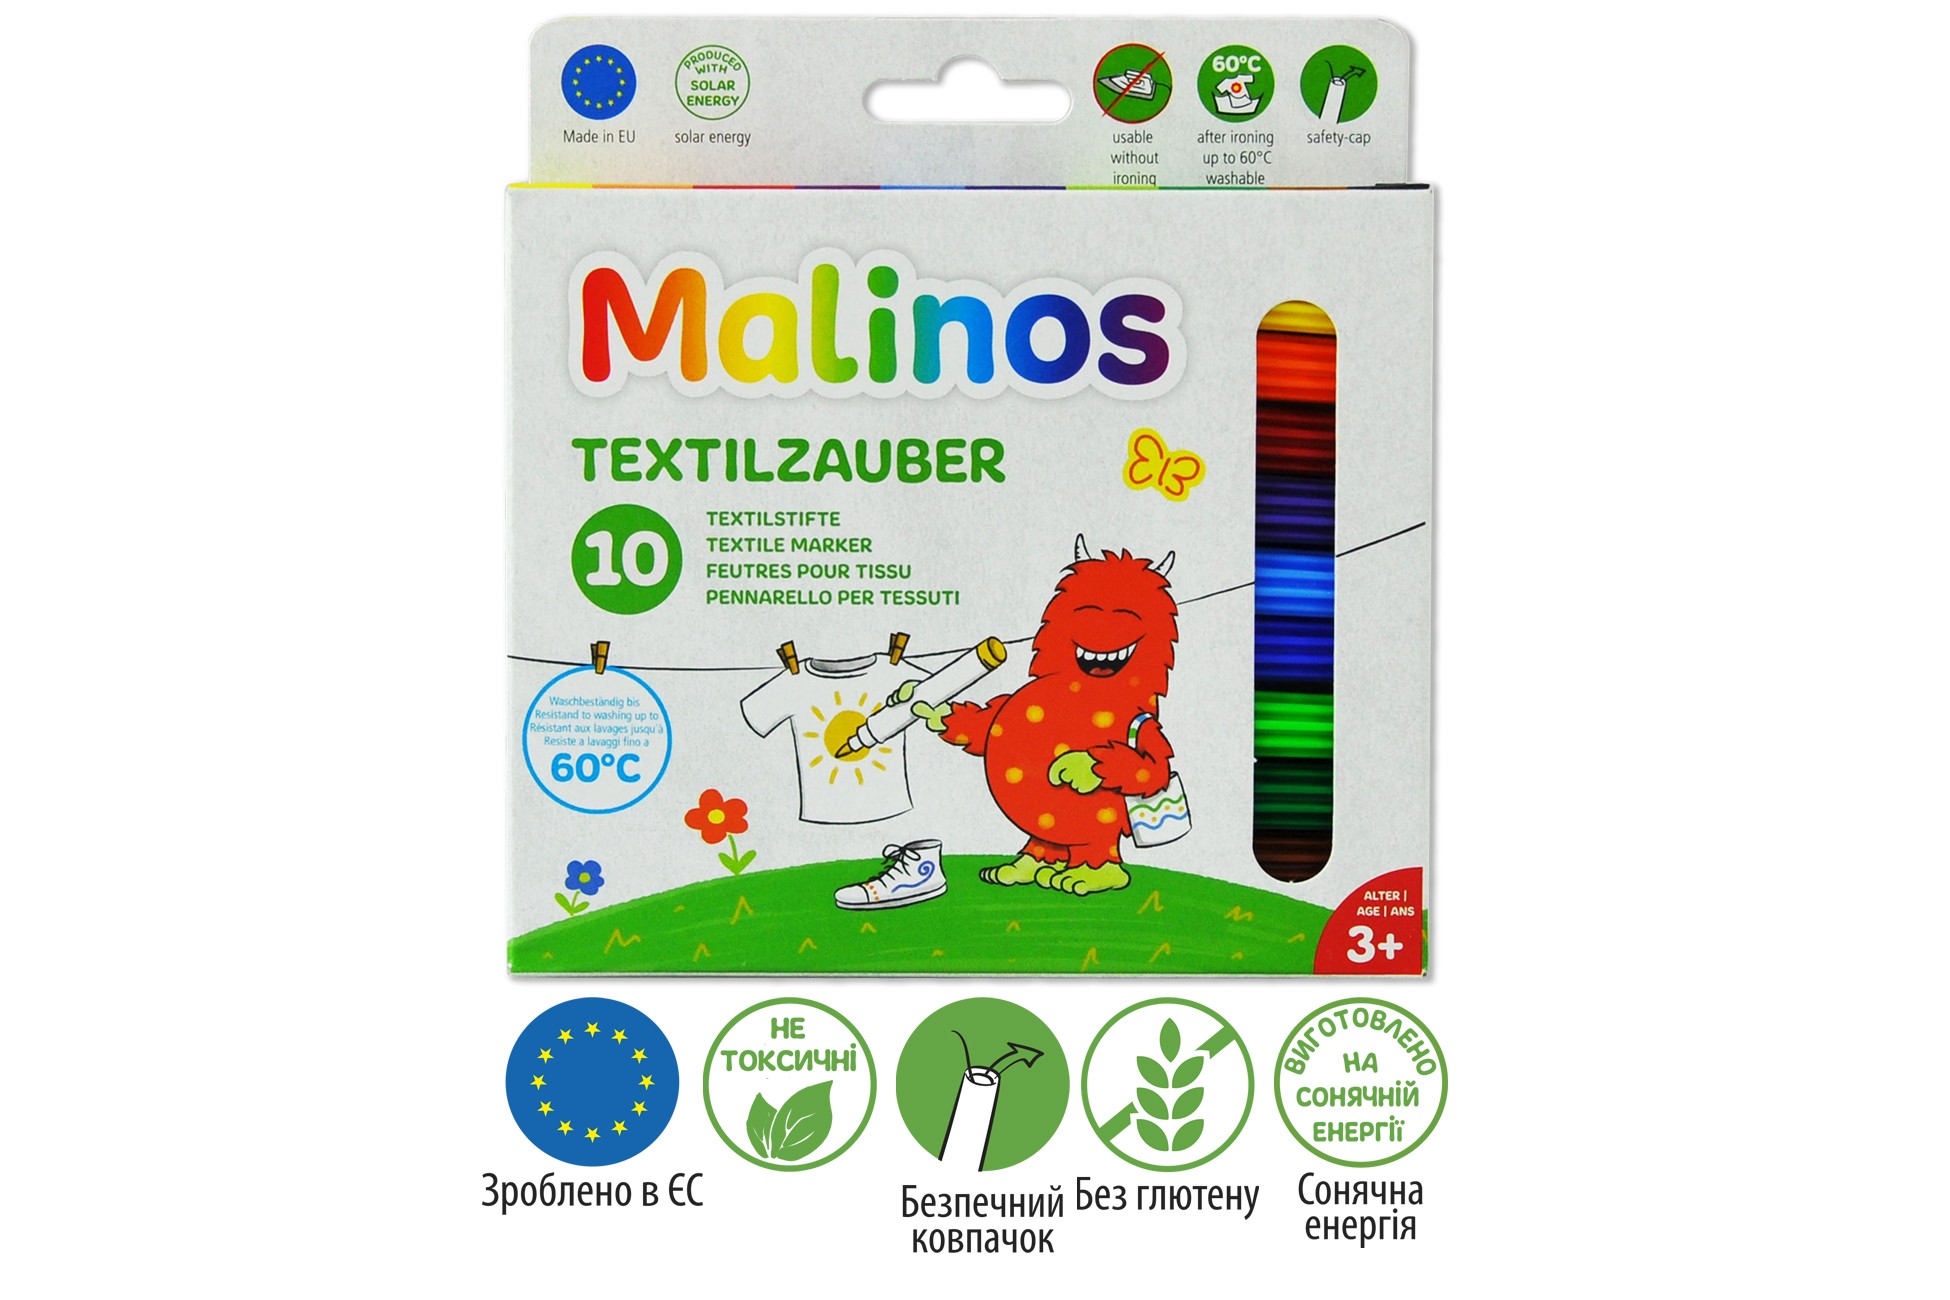 Фломастери для тканини Malinos Textil текстильні 10 шт MA-300010